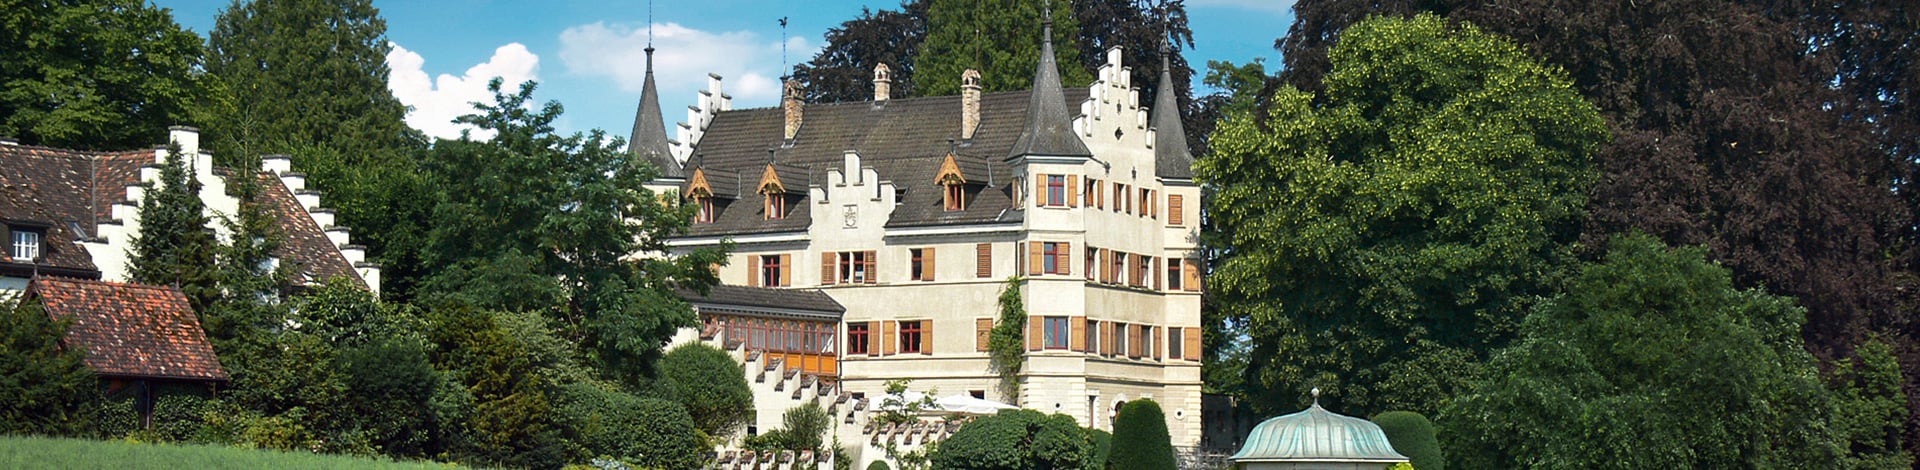 il castello di Kreuzlingen